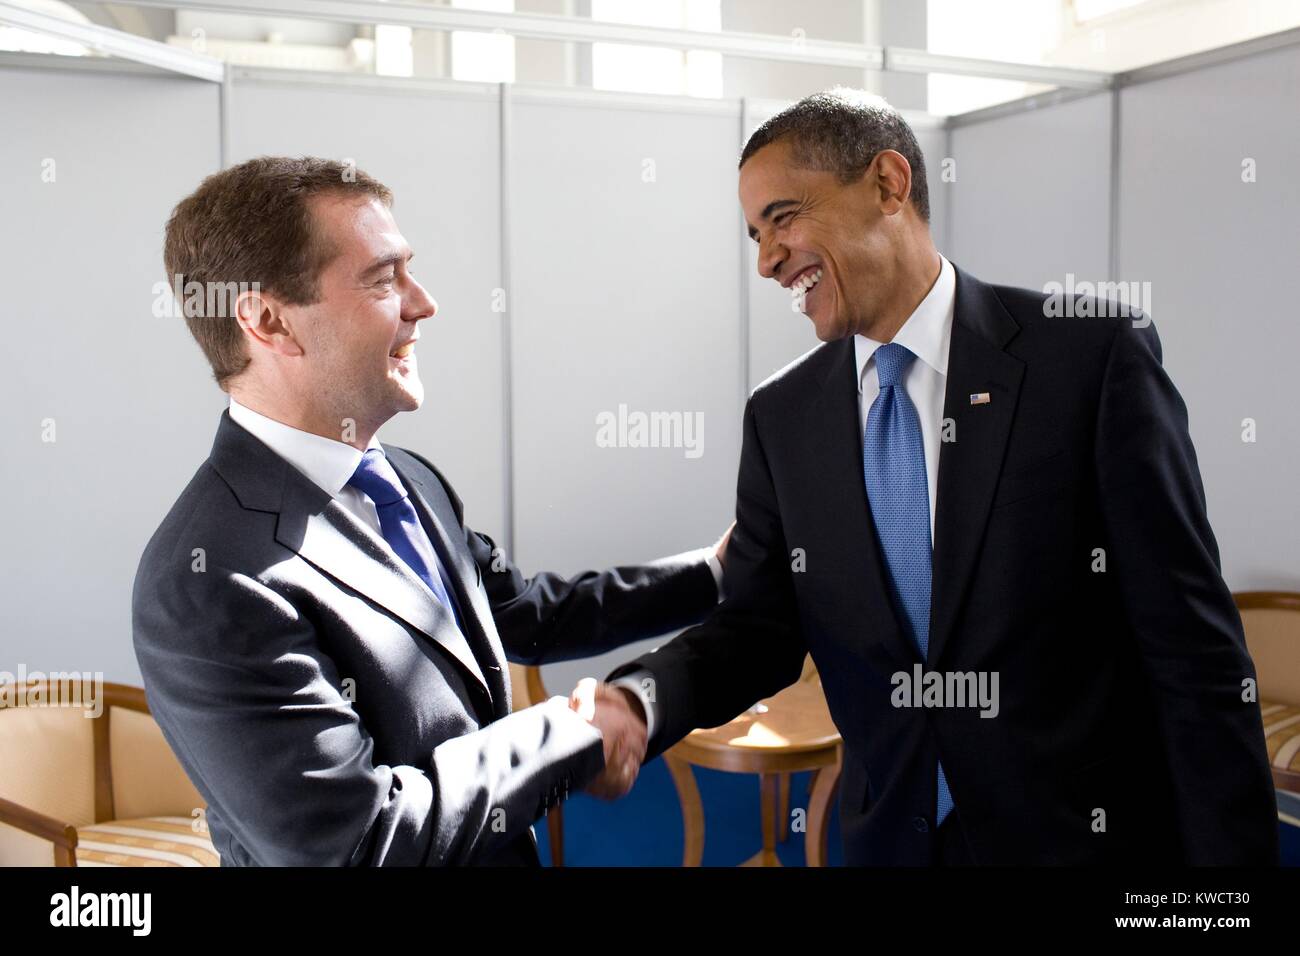 Le président Barack Obama fait ses adieux au président russe Dmitri Medvedev. Ils étaient inscrits à l'entreprise parallèle au Sommet Manezh Salle d'exposition de Moscou, Russie, le 7 juillet 2009. (BSLOC_2015_3_197) Banque D'Images